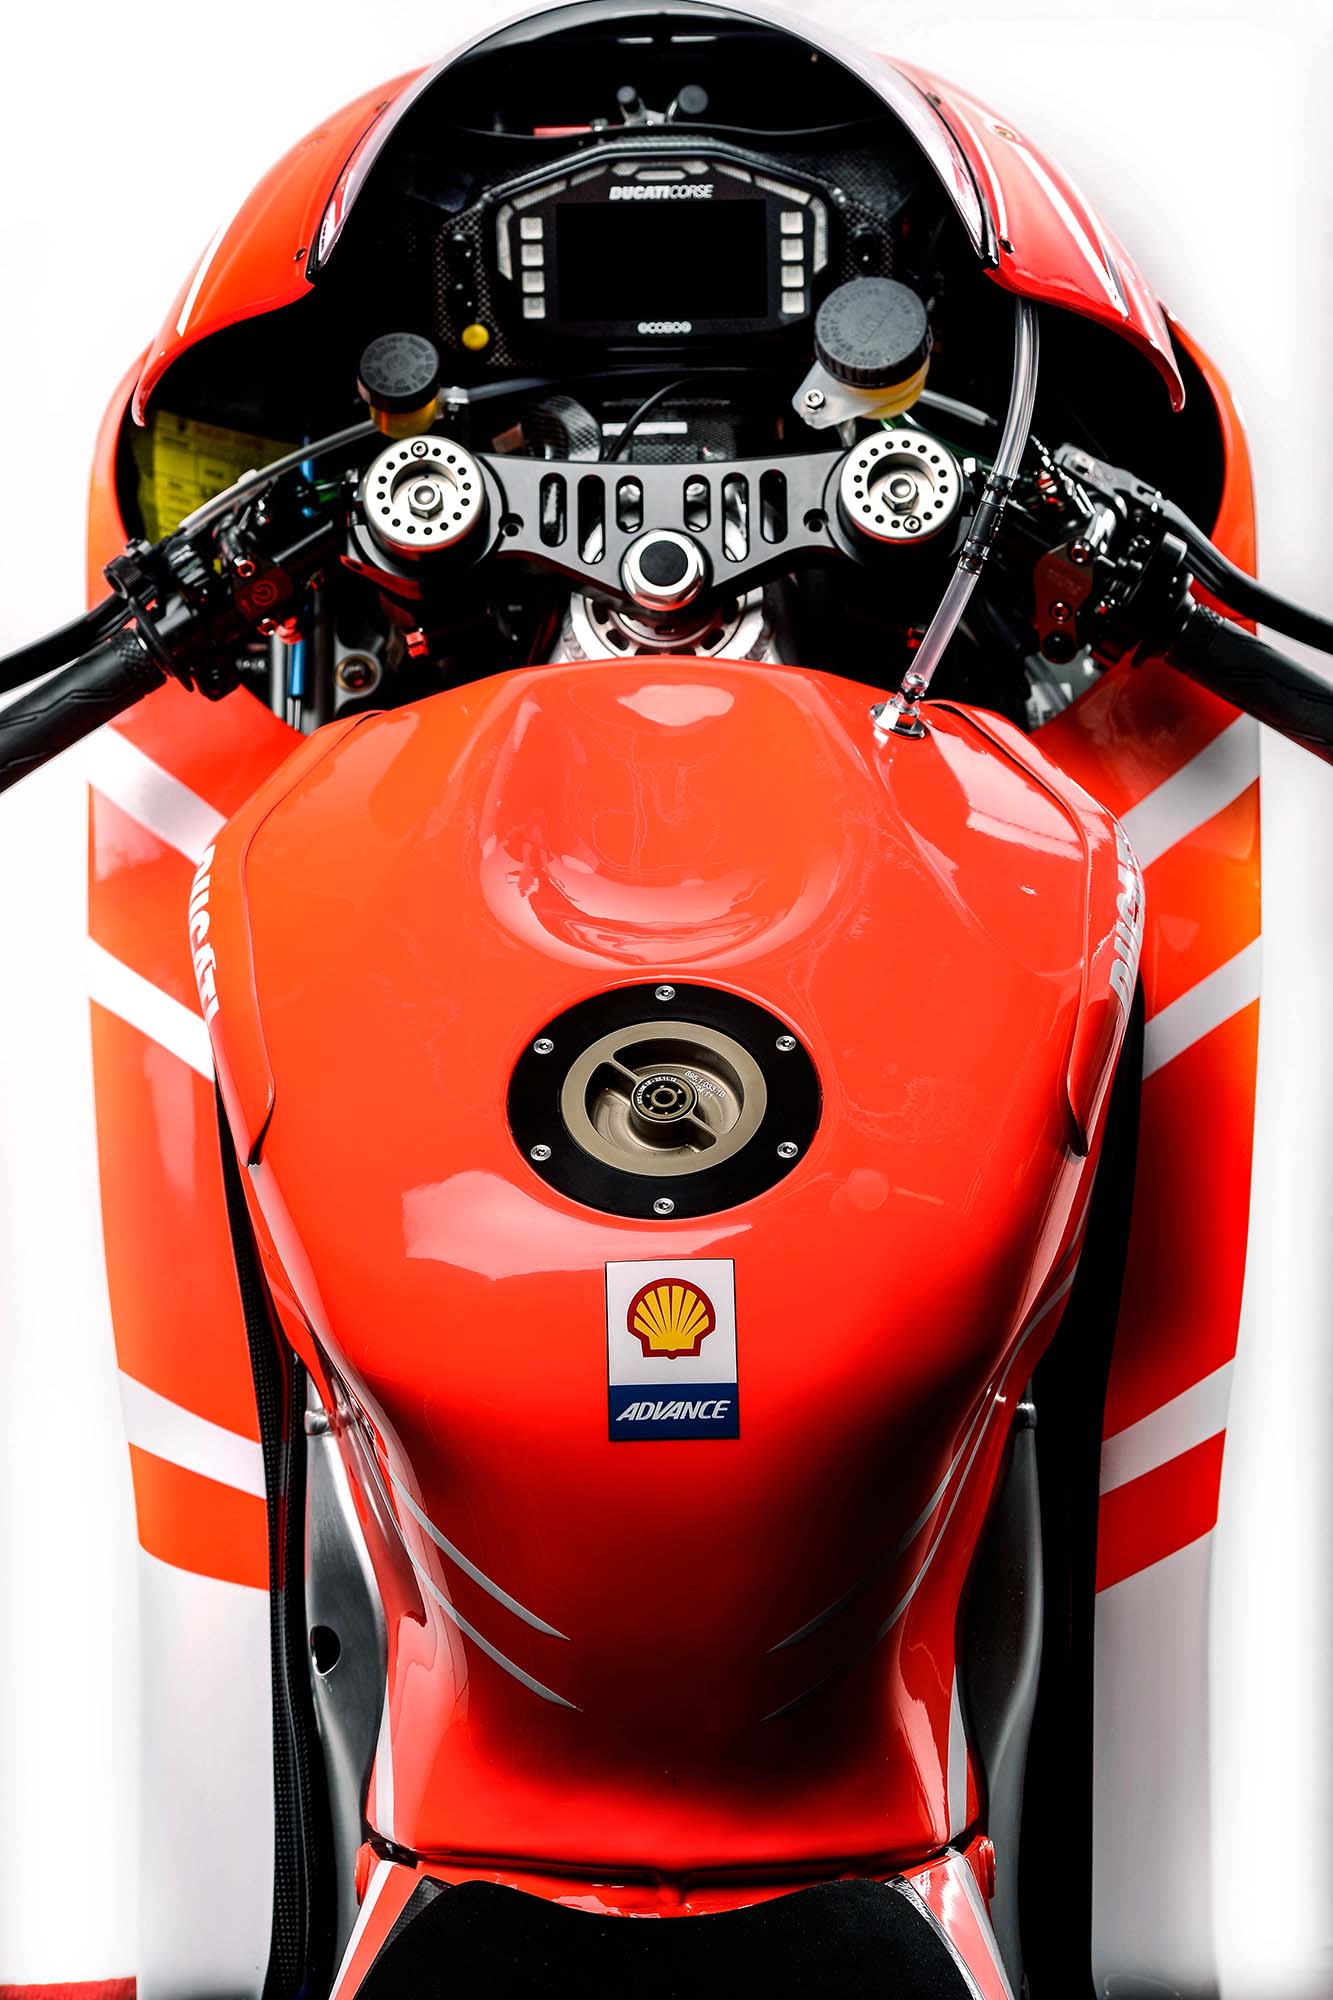 MotoGP, motor terbaru nicky-hayden-dan andrea-dovizioso: Spesifikasi dan Foto Motor Ducati Desmosedici GP13